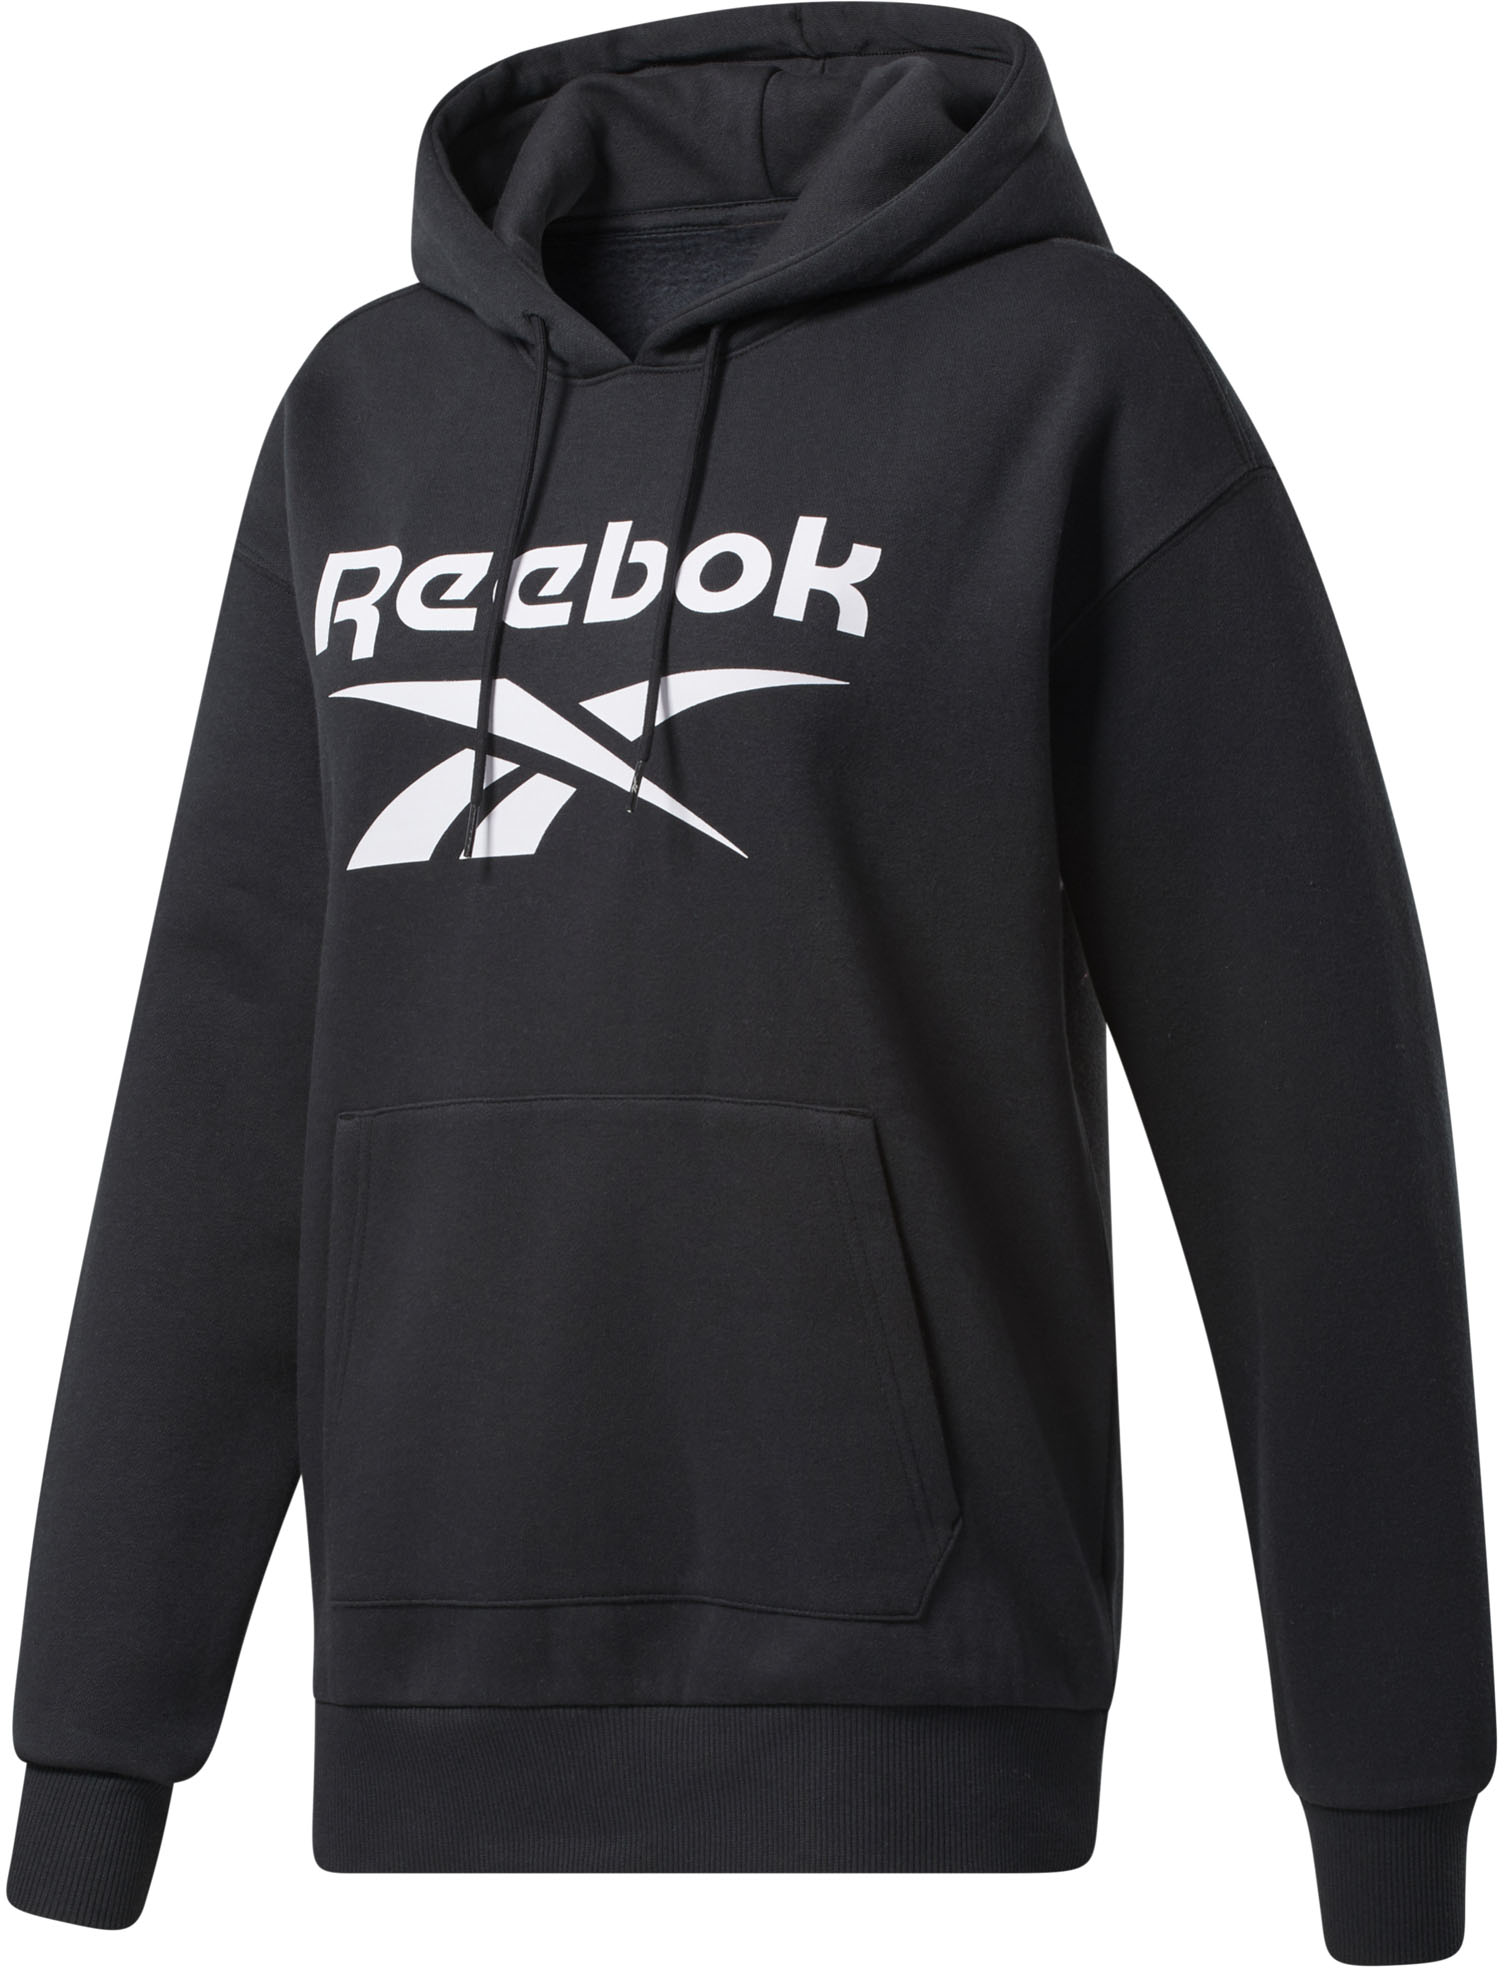 Reebok Sweatshirt »REEBOK IDENTITY LOGO FLEECE PULLOVER HOODIE« schwarz  L (42/44) M (38/40) S (34/36) XL (46/48) XS (30/32)